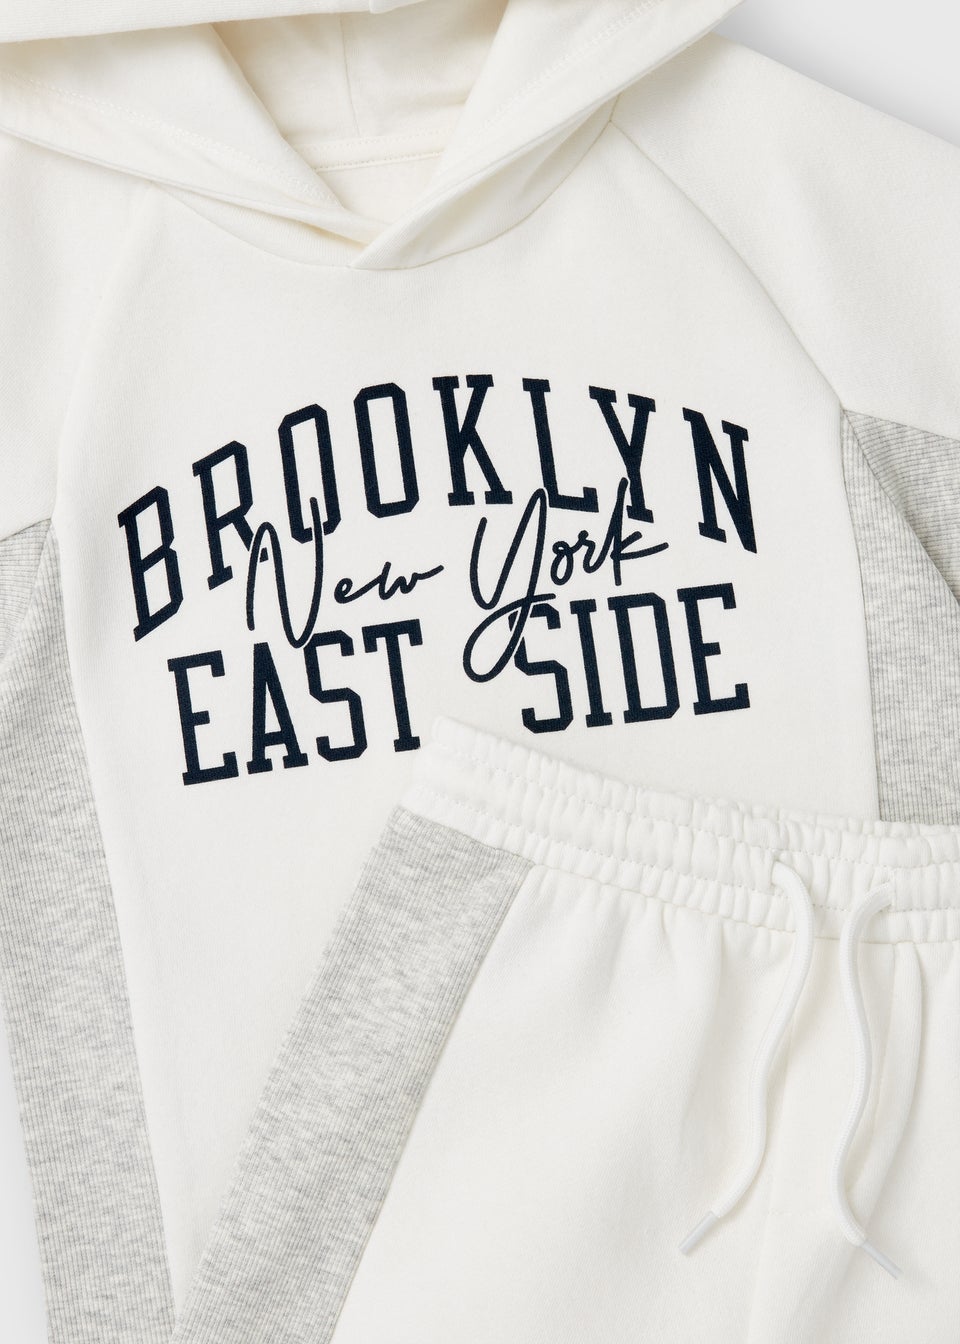 Boys White Brooklyn Hoodie & Shorts Set (1-7yrs)